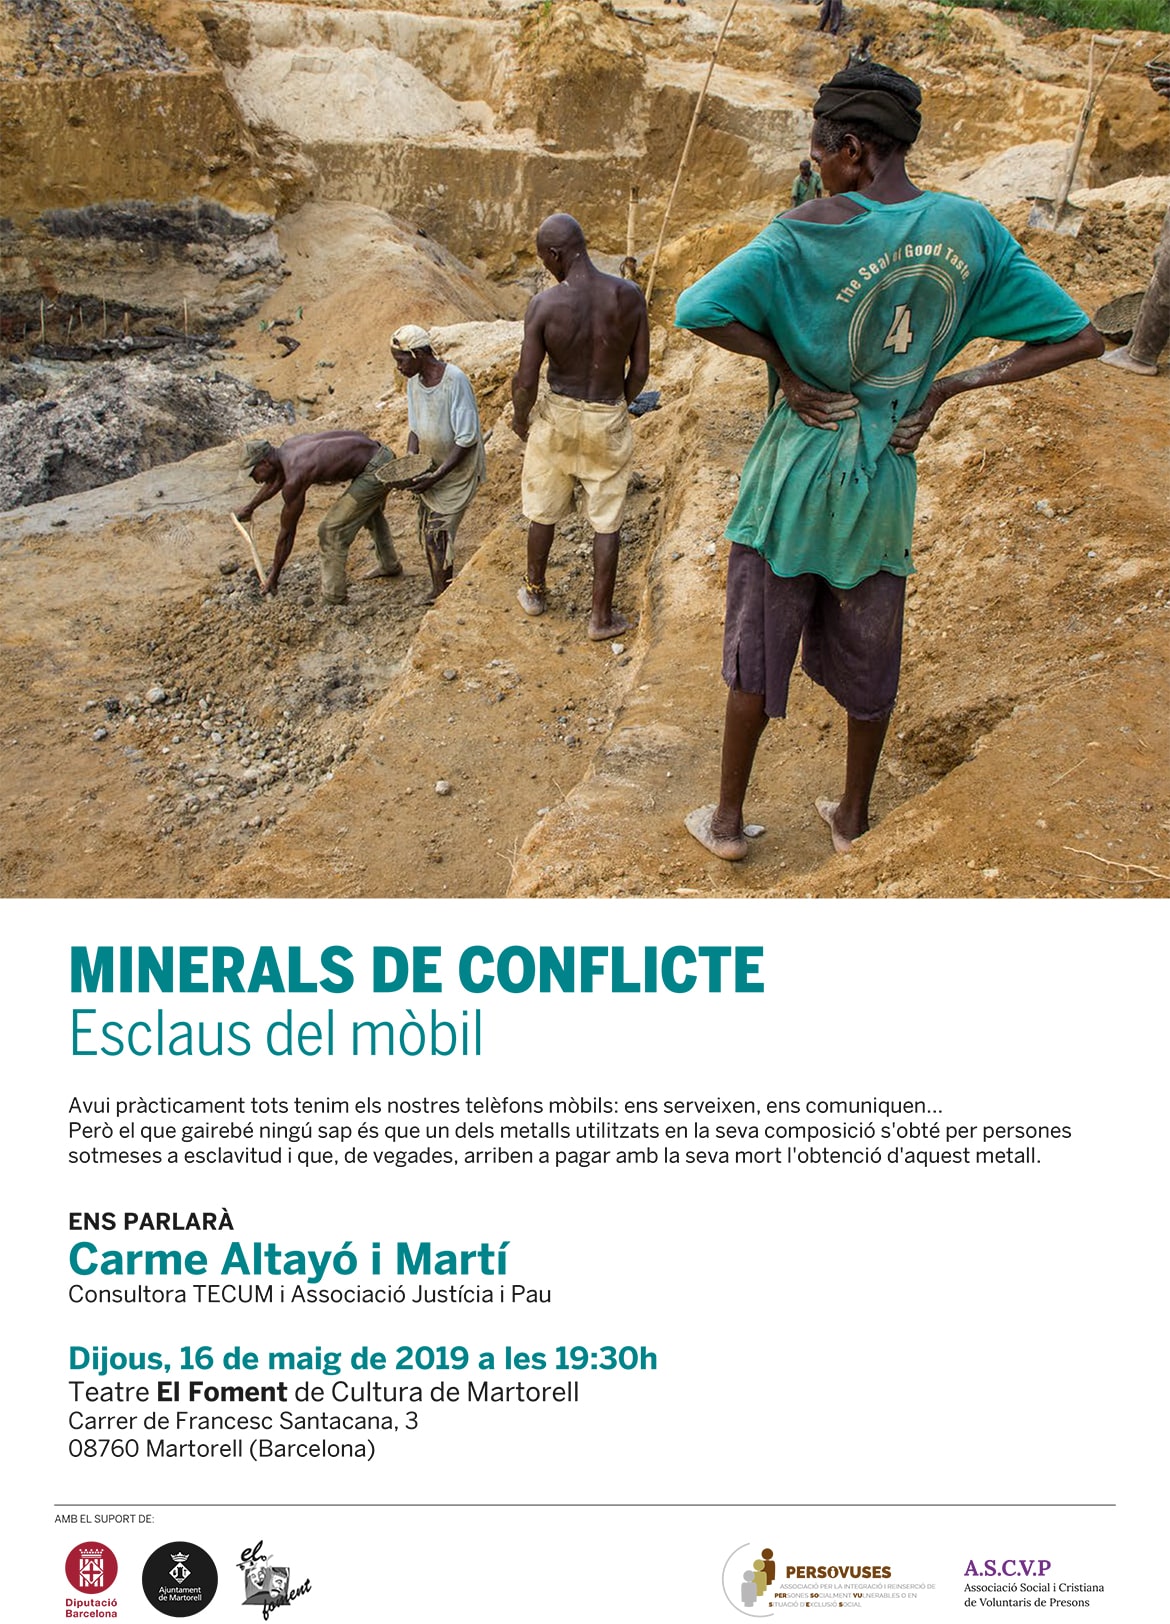 Minerals del conflicte